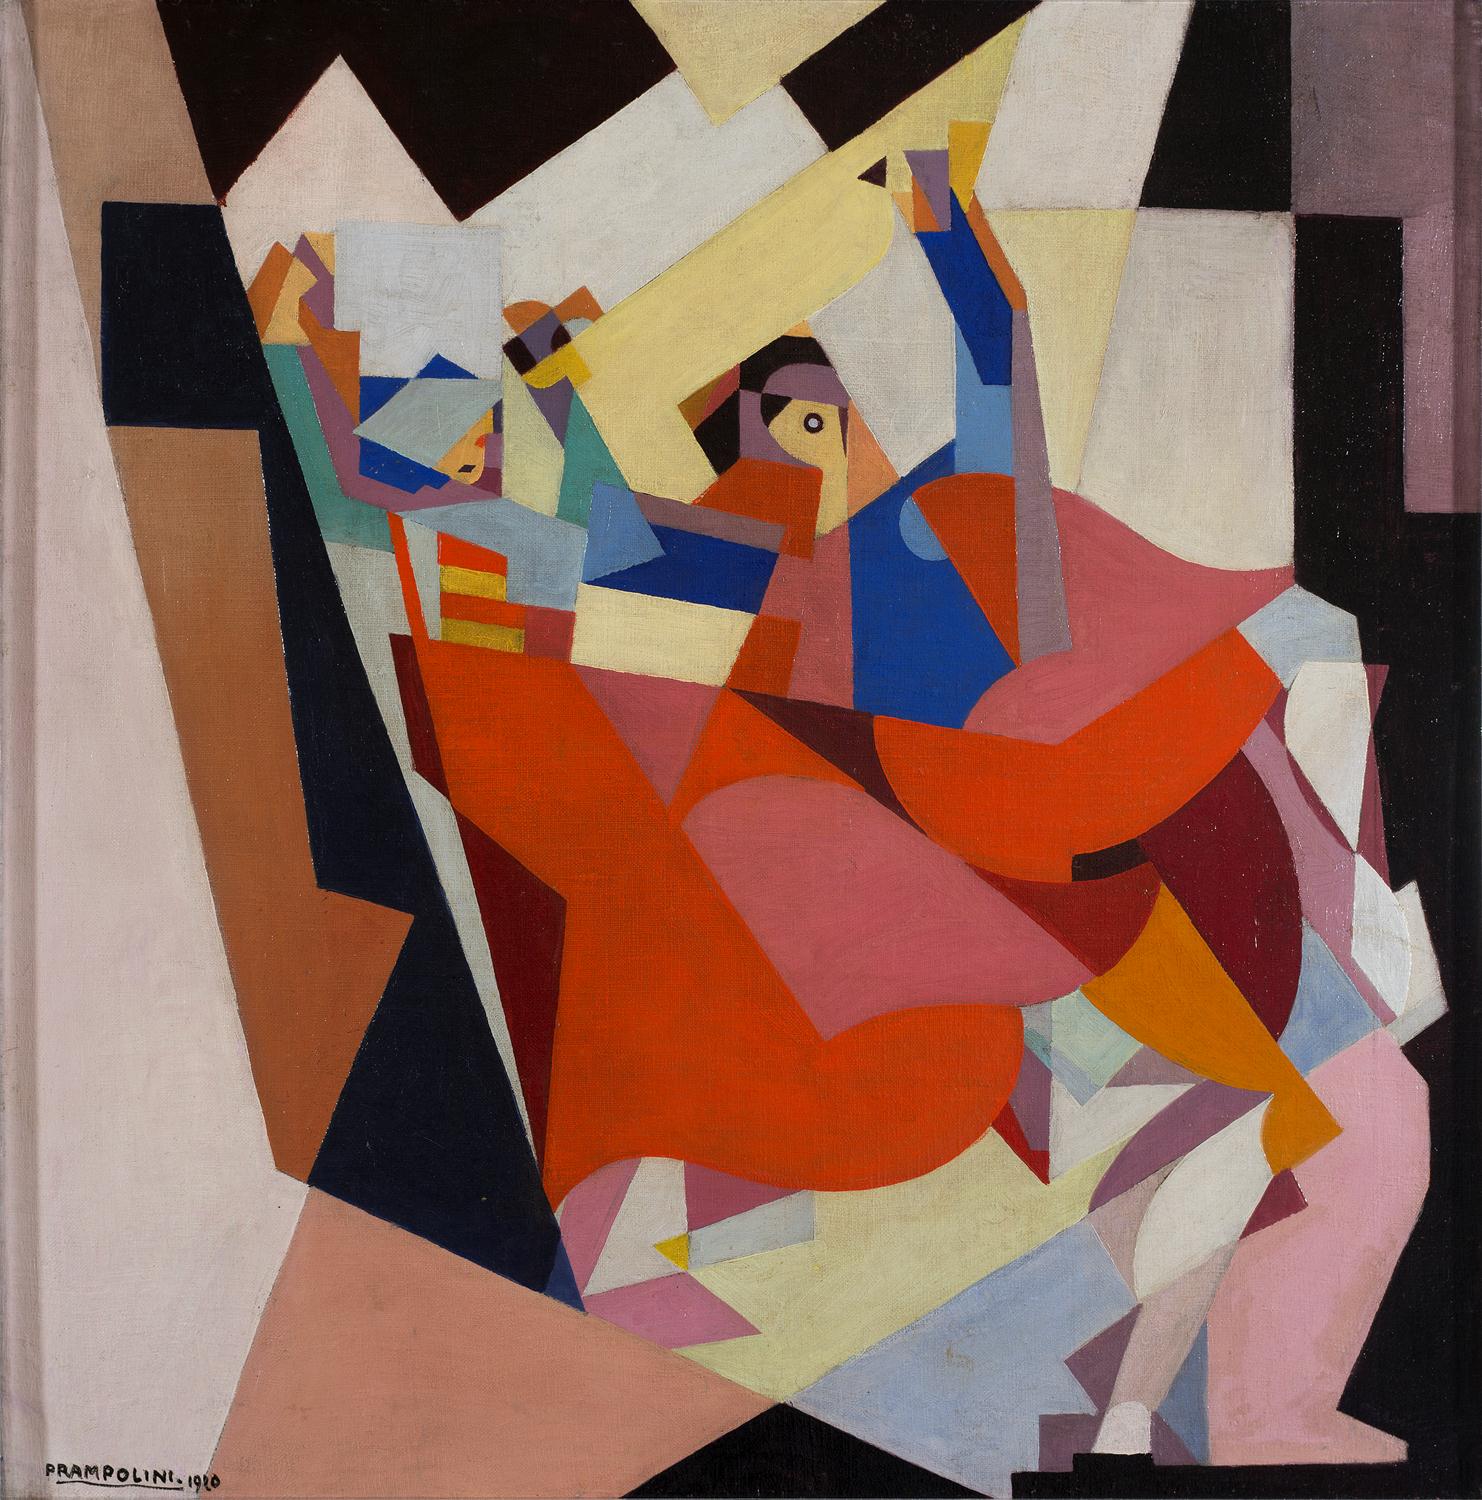 Enrico Prampolini, "Tarantela", 1920, płótno, farby olejne, wym. 80 x 80 cm, archiwum Muzeum Sztuki w Łodzi